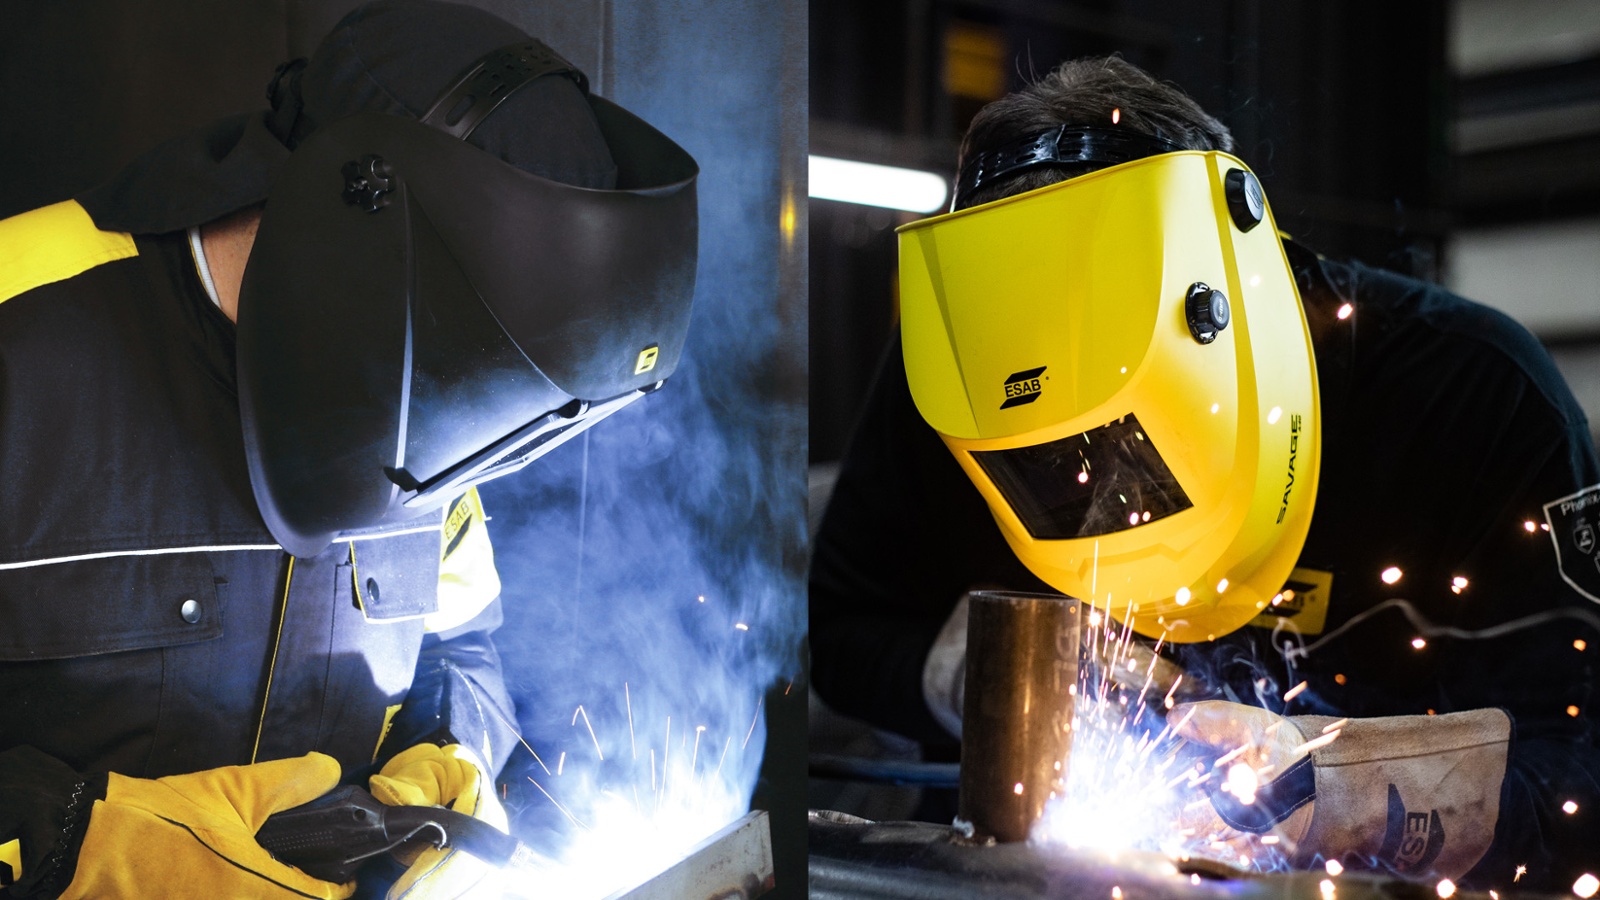 The welders welding in a passive welding helmet and an auto-darkening welding helmet.